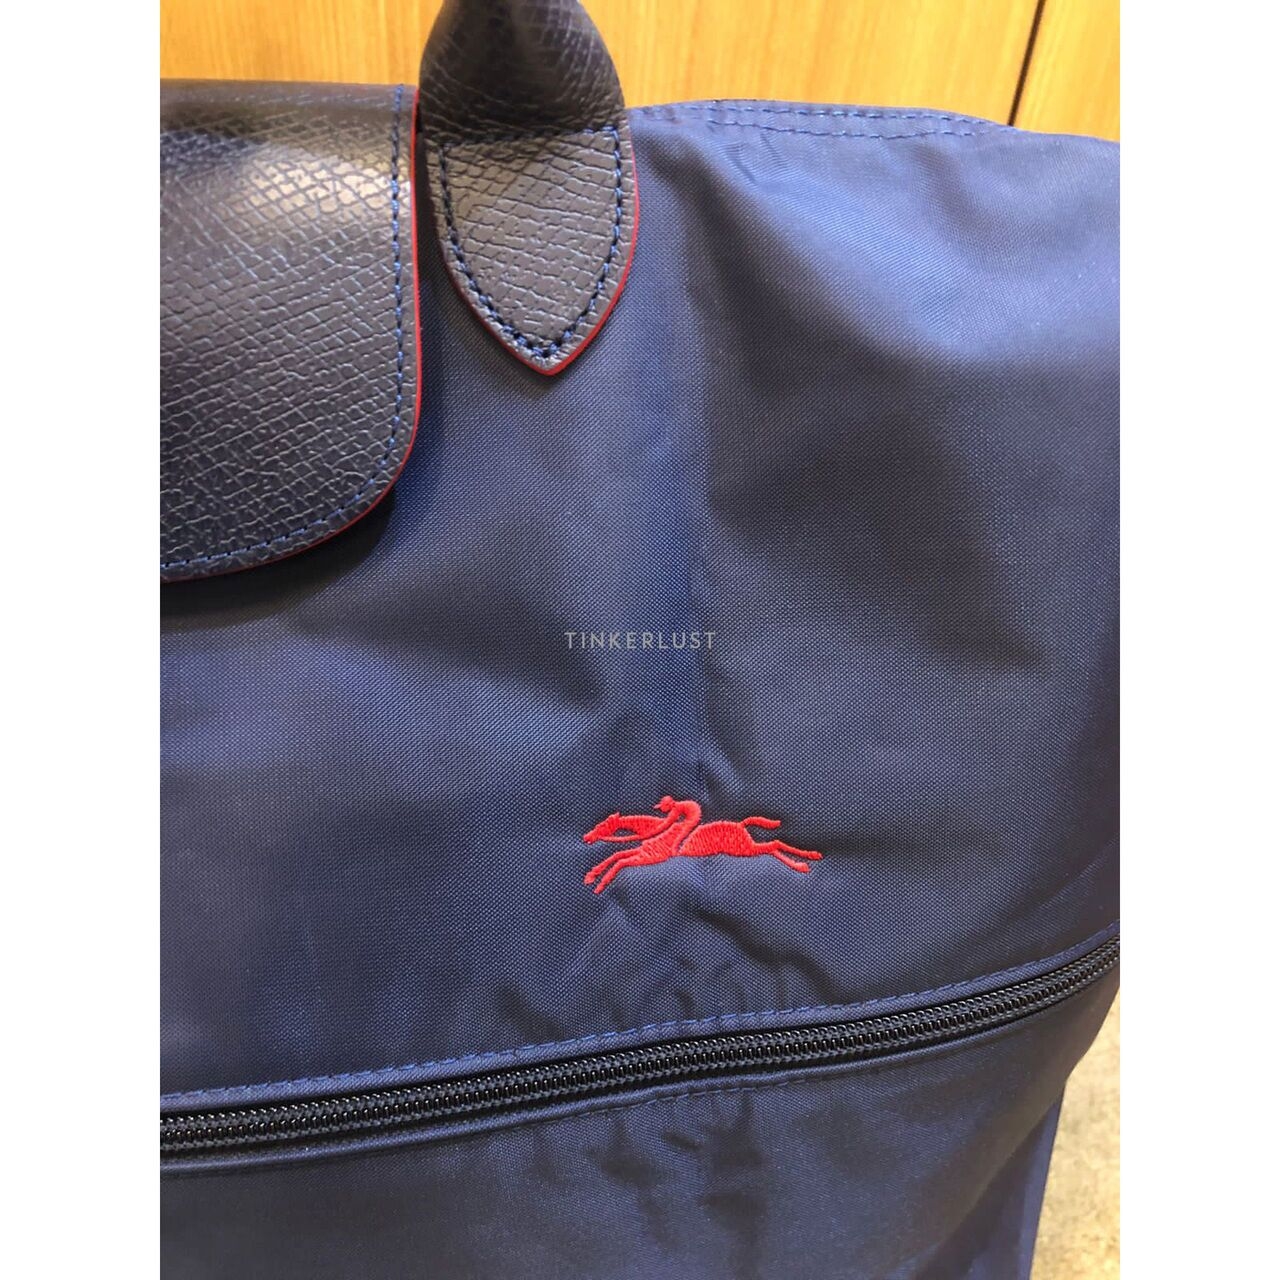 Longchamp Le Pliage Expandable Travel Bag Navy Satchel